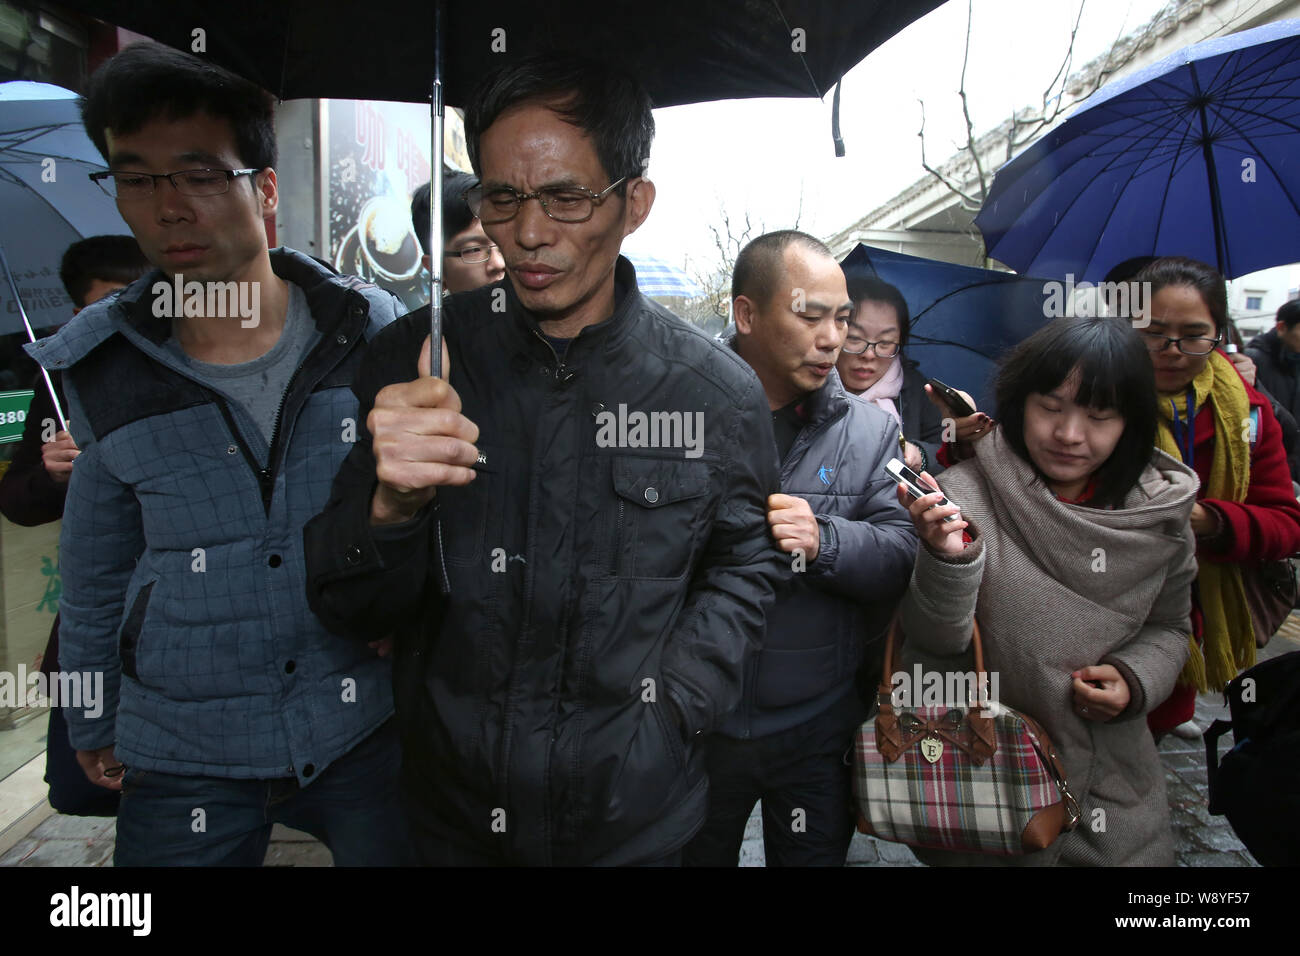 Le vieil homme, dont le fils a été l'empoisonneur dans un cas d'empoisonnement, deuxième à gauche, laisse la cour après avoir entendu la sentence de mort sur son fils au Shanghai Banque D'Images